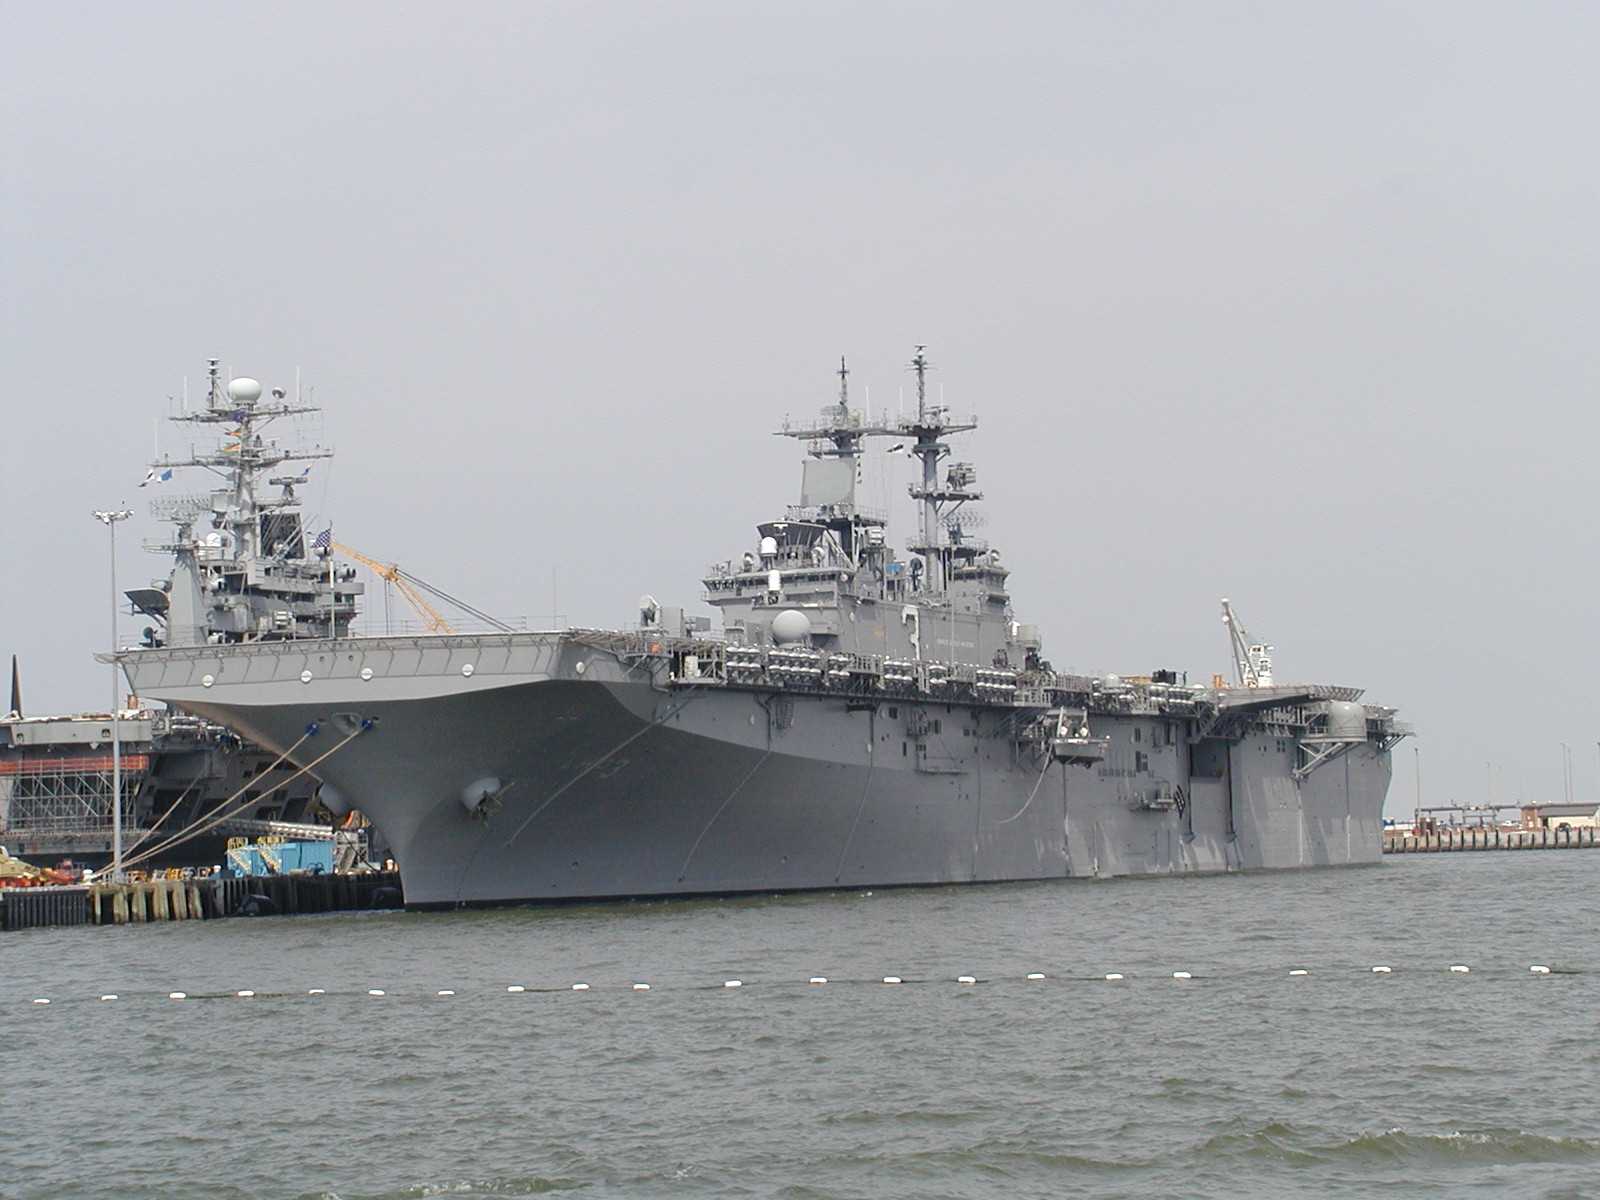 USS KEARSARGE